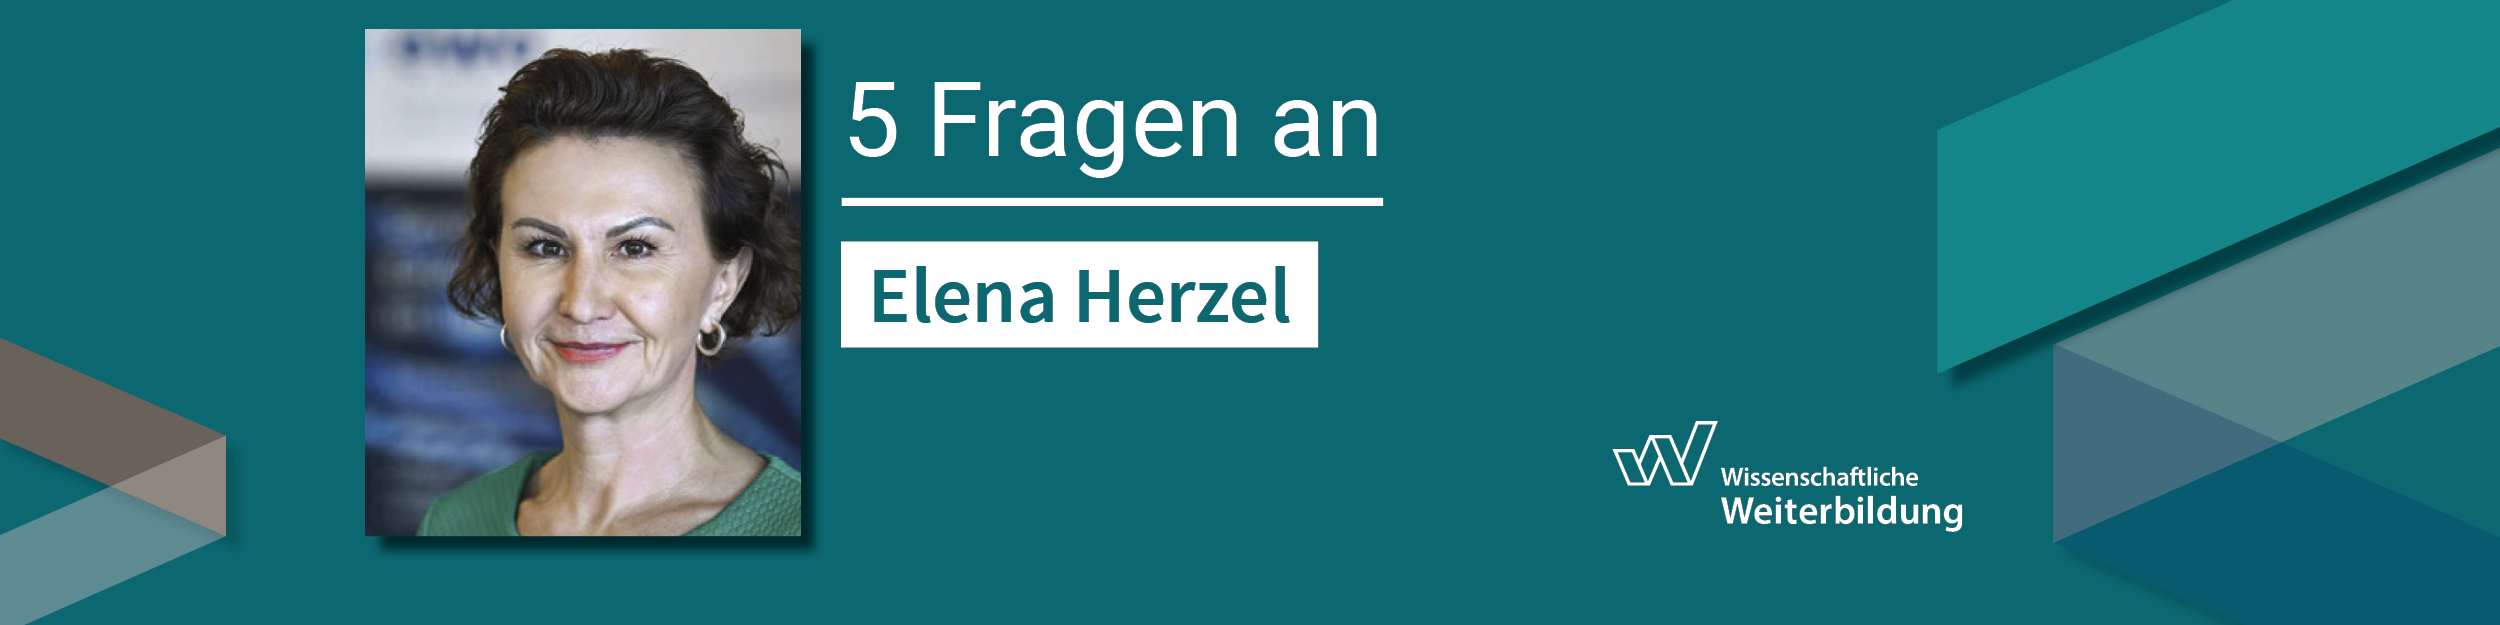 5-Fragen-an Elena Herzel